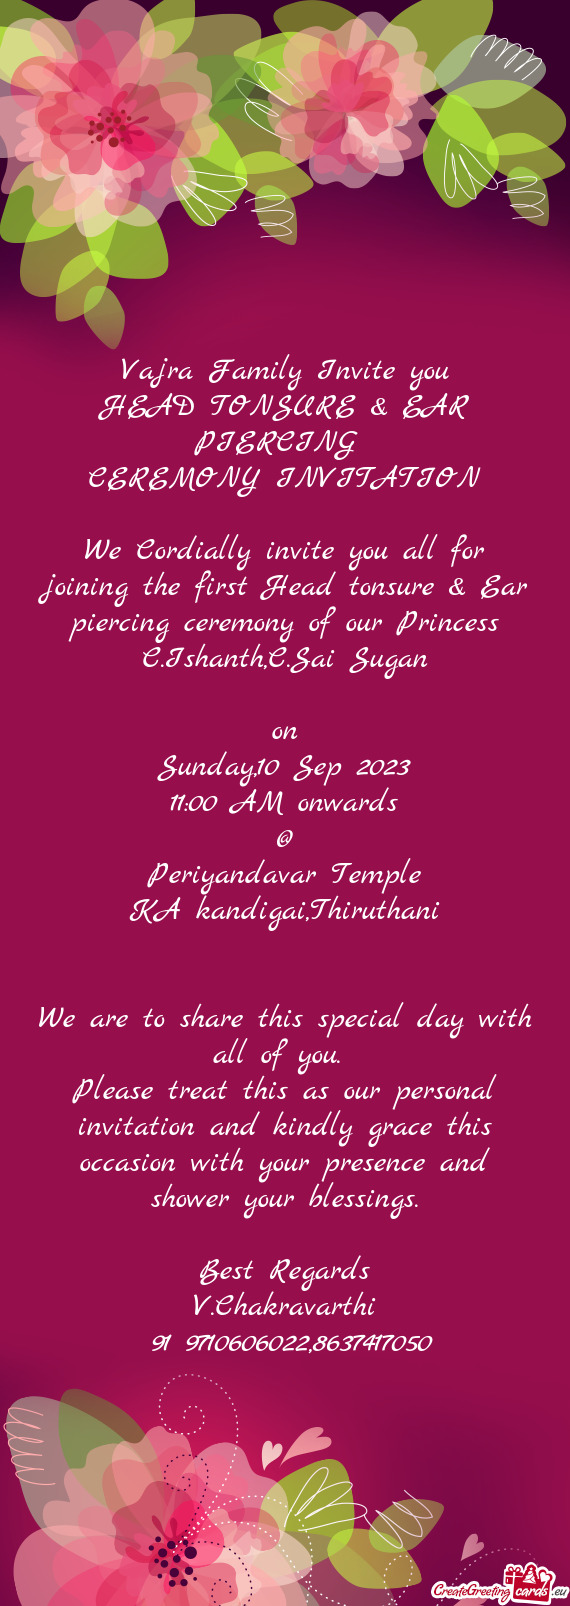 Vajra Family Invite you